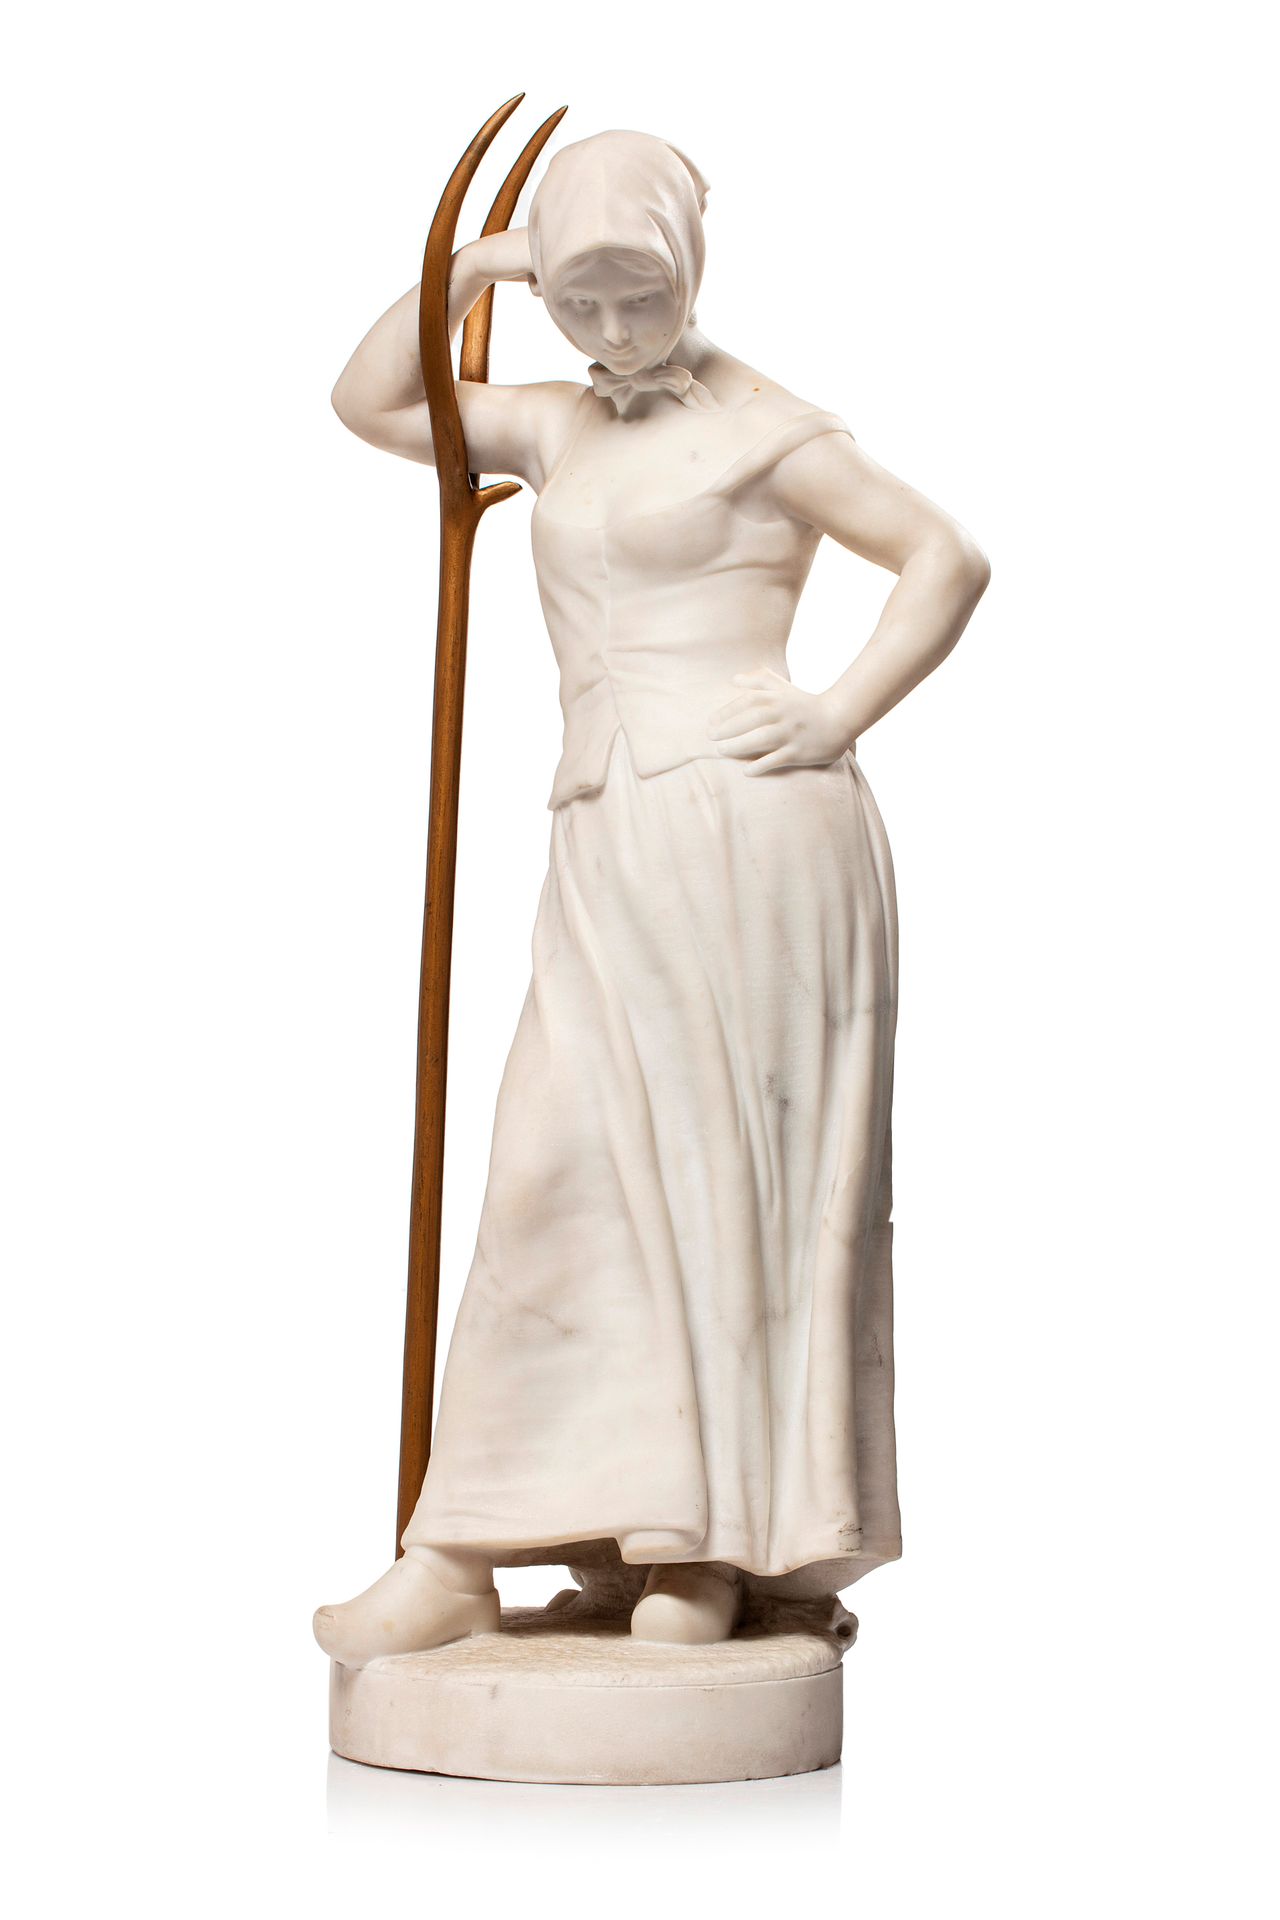 Null Alfred BOUCHER (1850 -1934)

Die Tinewoman

Carrara-weiße Skulptur einer ju&hellip;